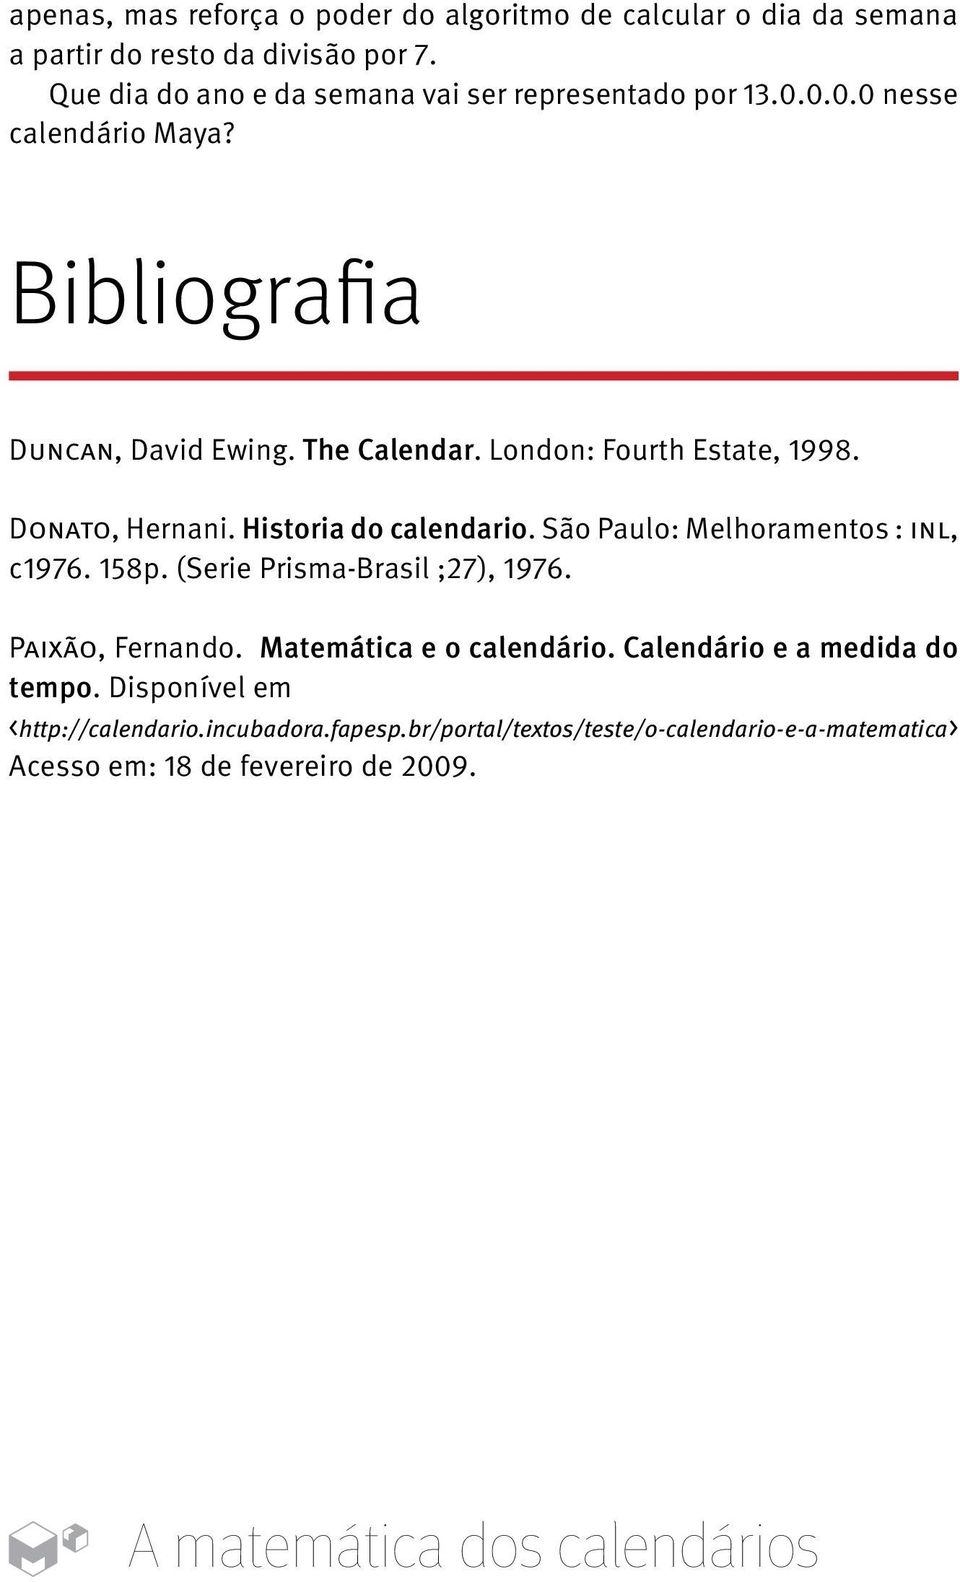 London: Fourth Estate, 1998. Donato, Hernani. Historia do calendario. São Paulo: Melhoramentos : inl, c1976. 158p. (Serie Prisma-Brasil ;27), 1976.